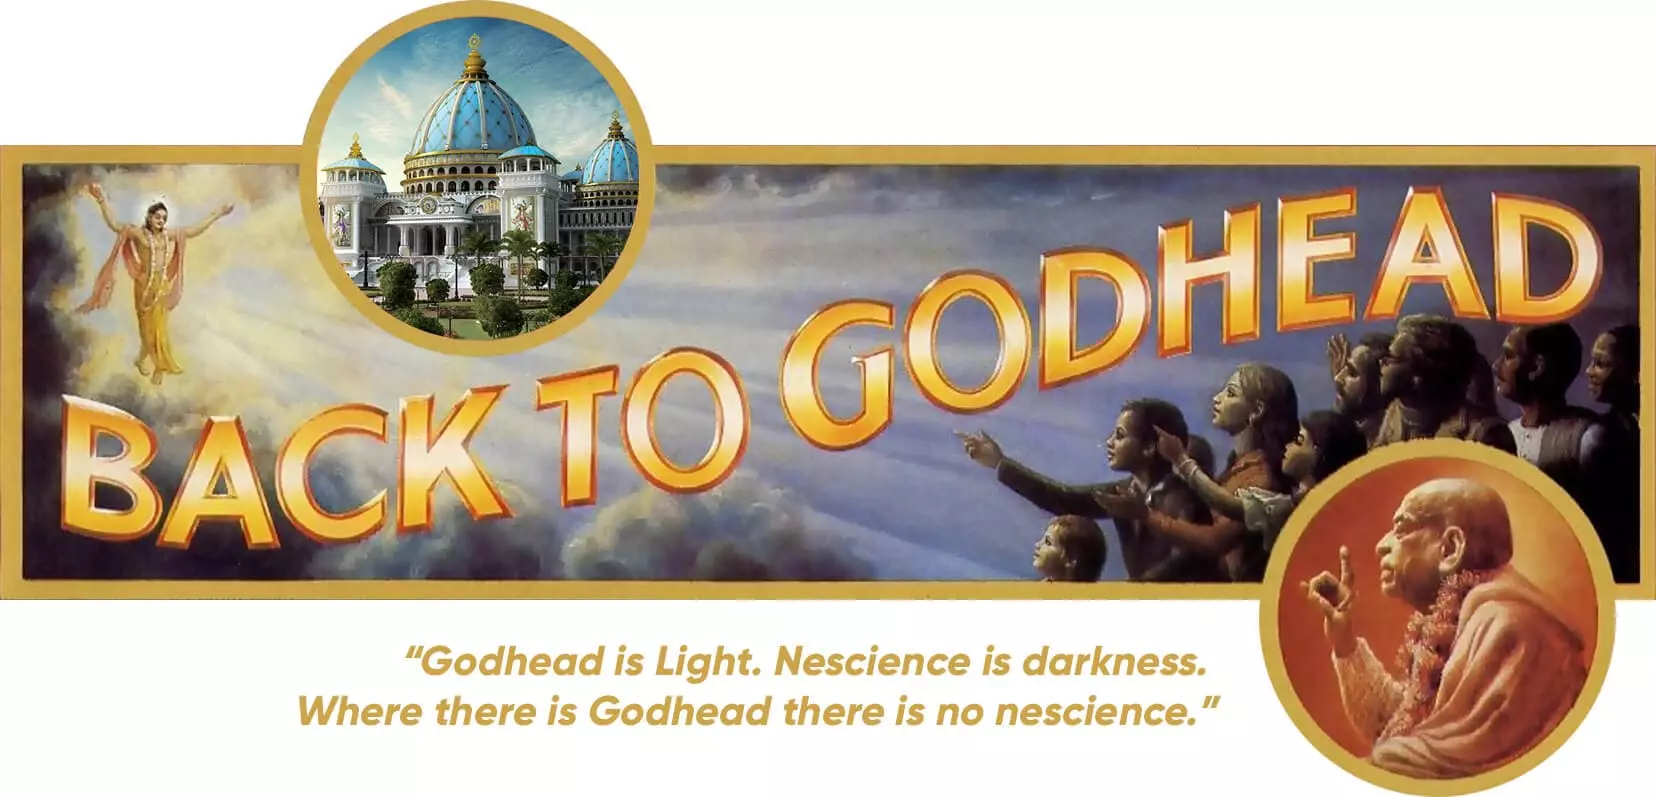 Programme de sensibilisation du Temple du Planétarium védique - Couverture du magazine Back to Godhead